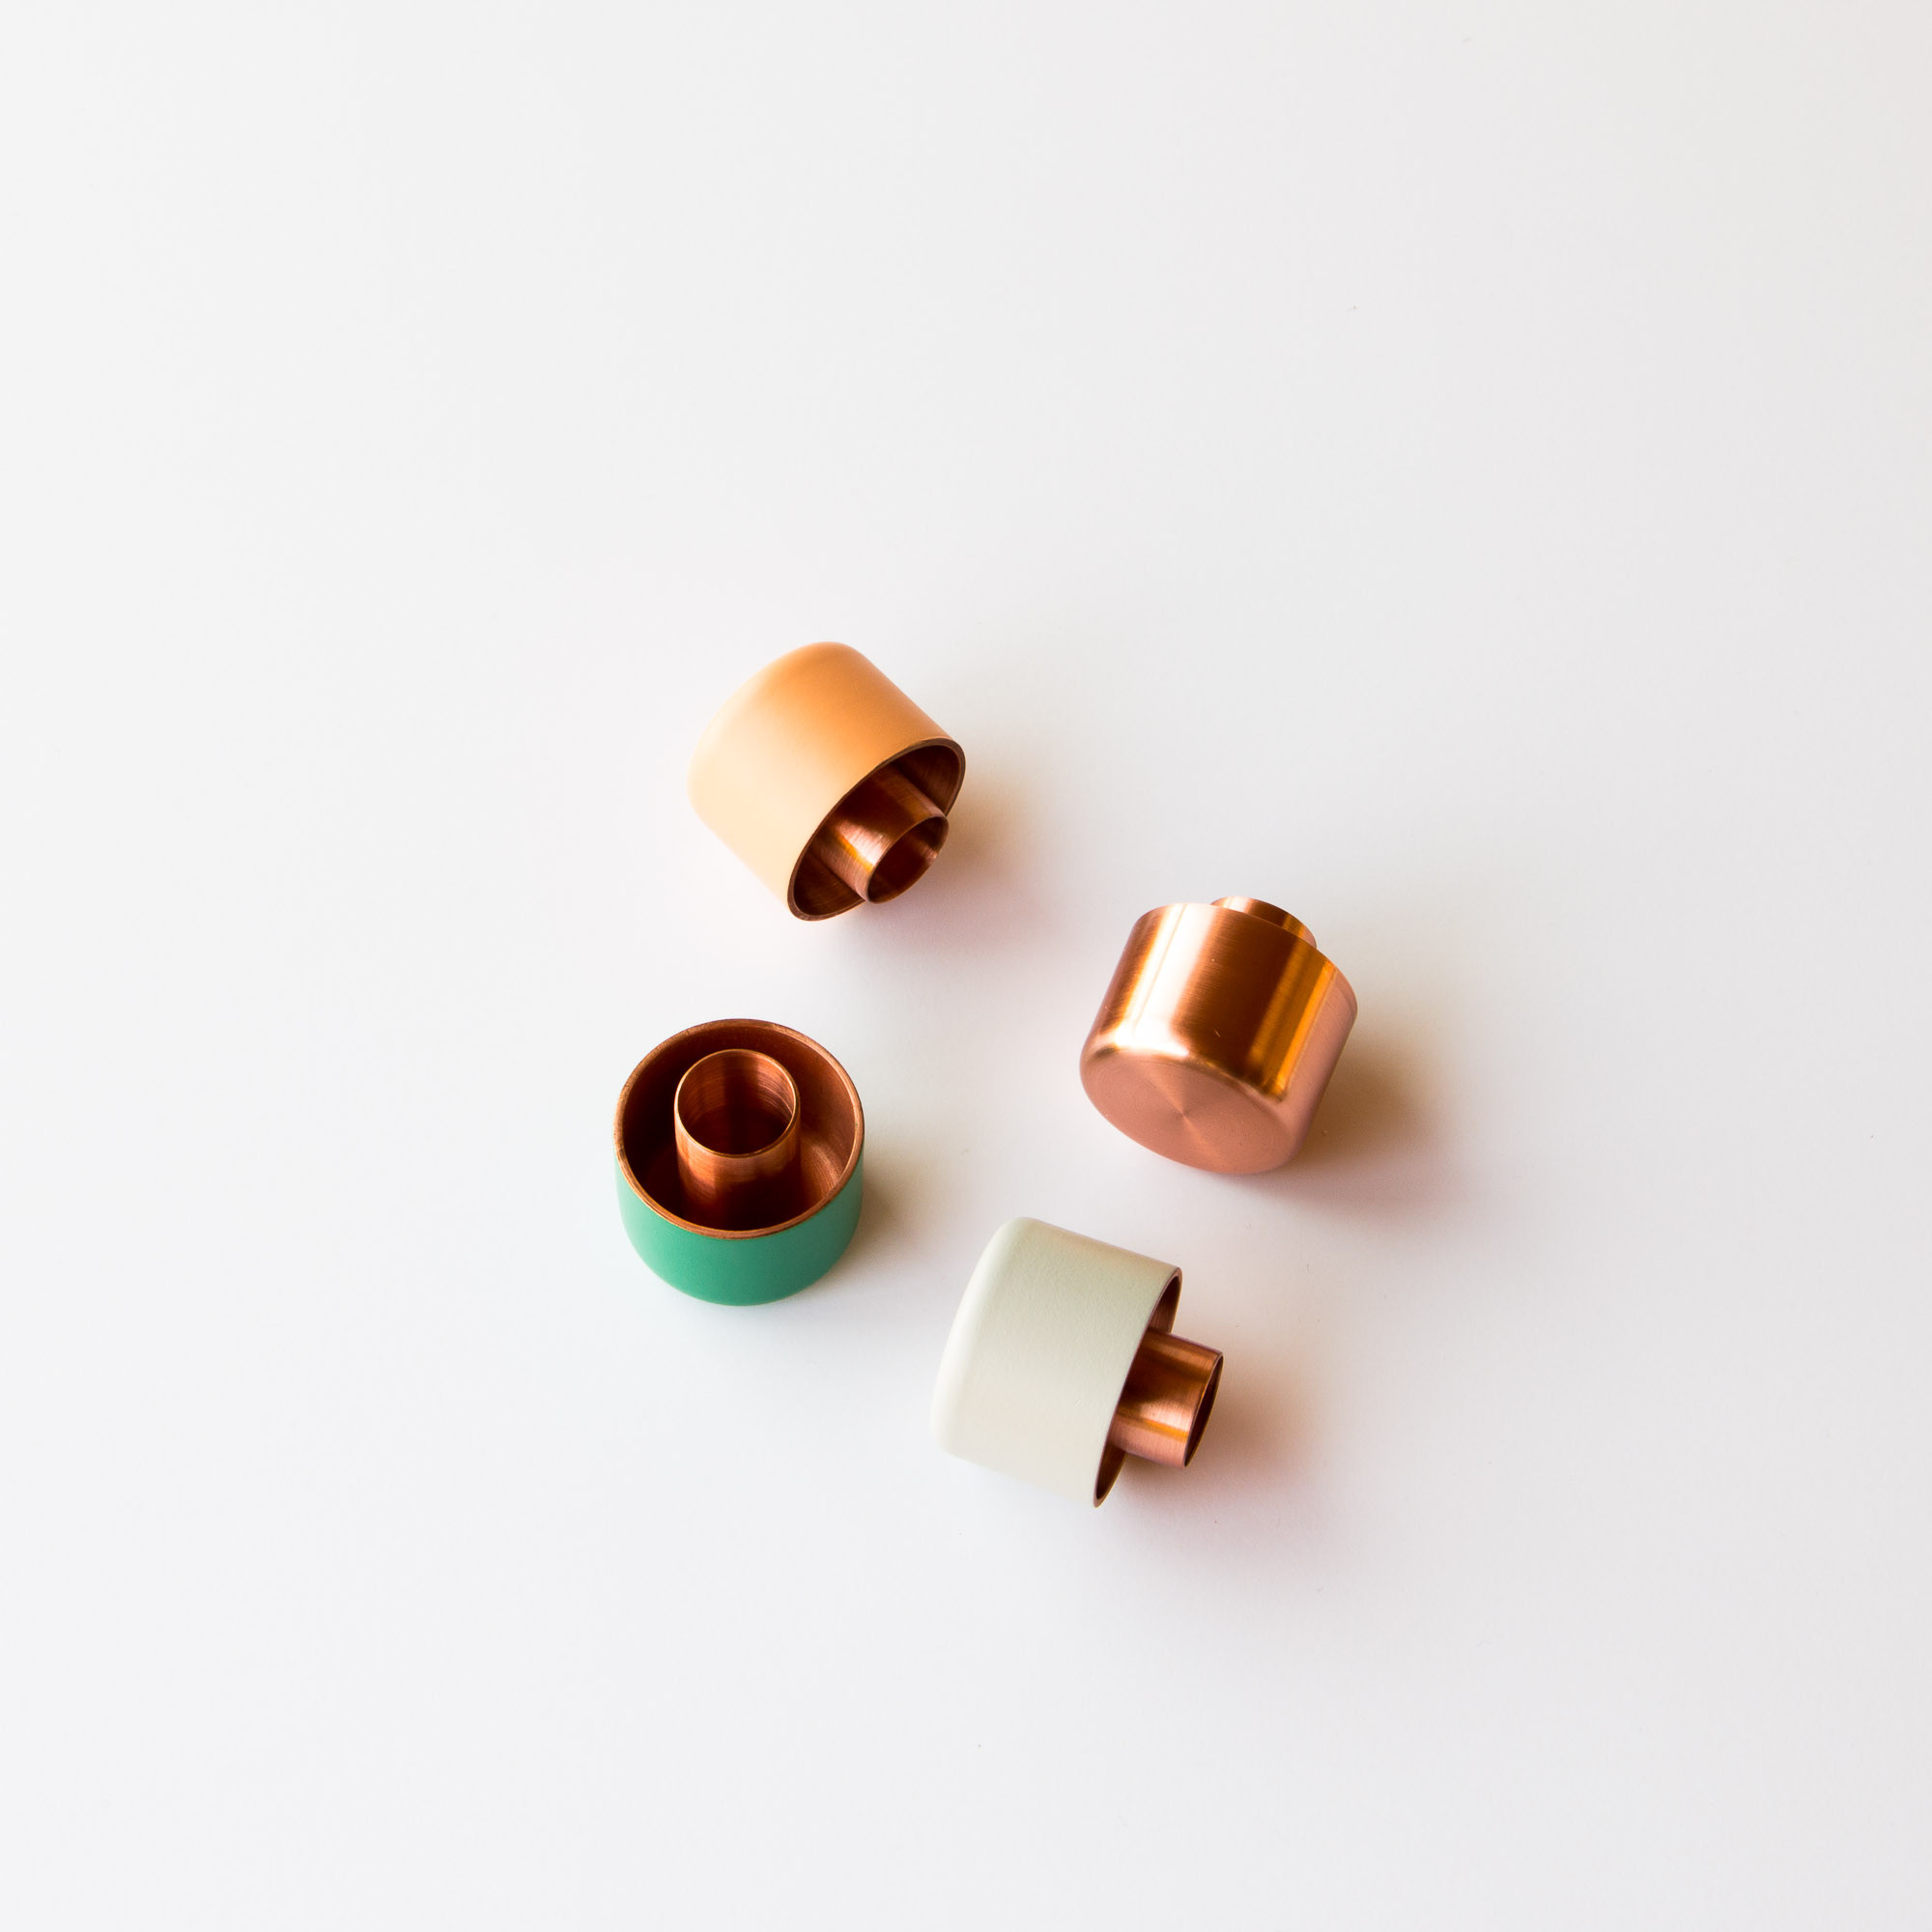 aubry-levesque-polished-copper-candleholder-07